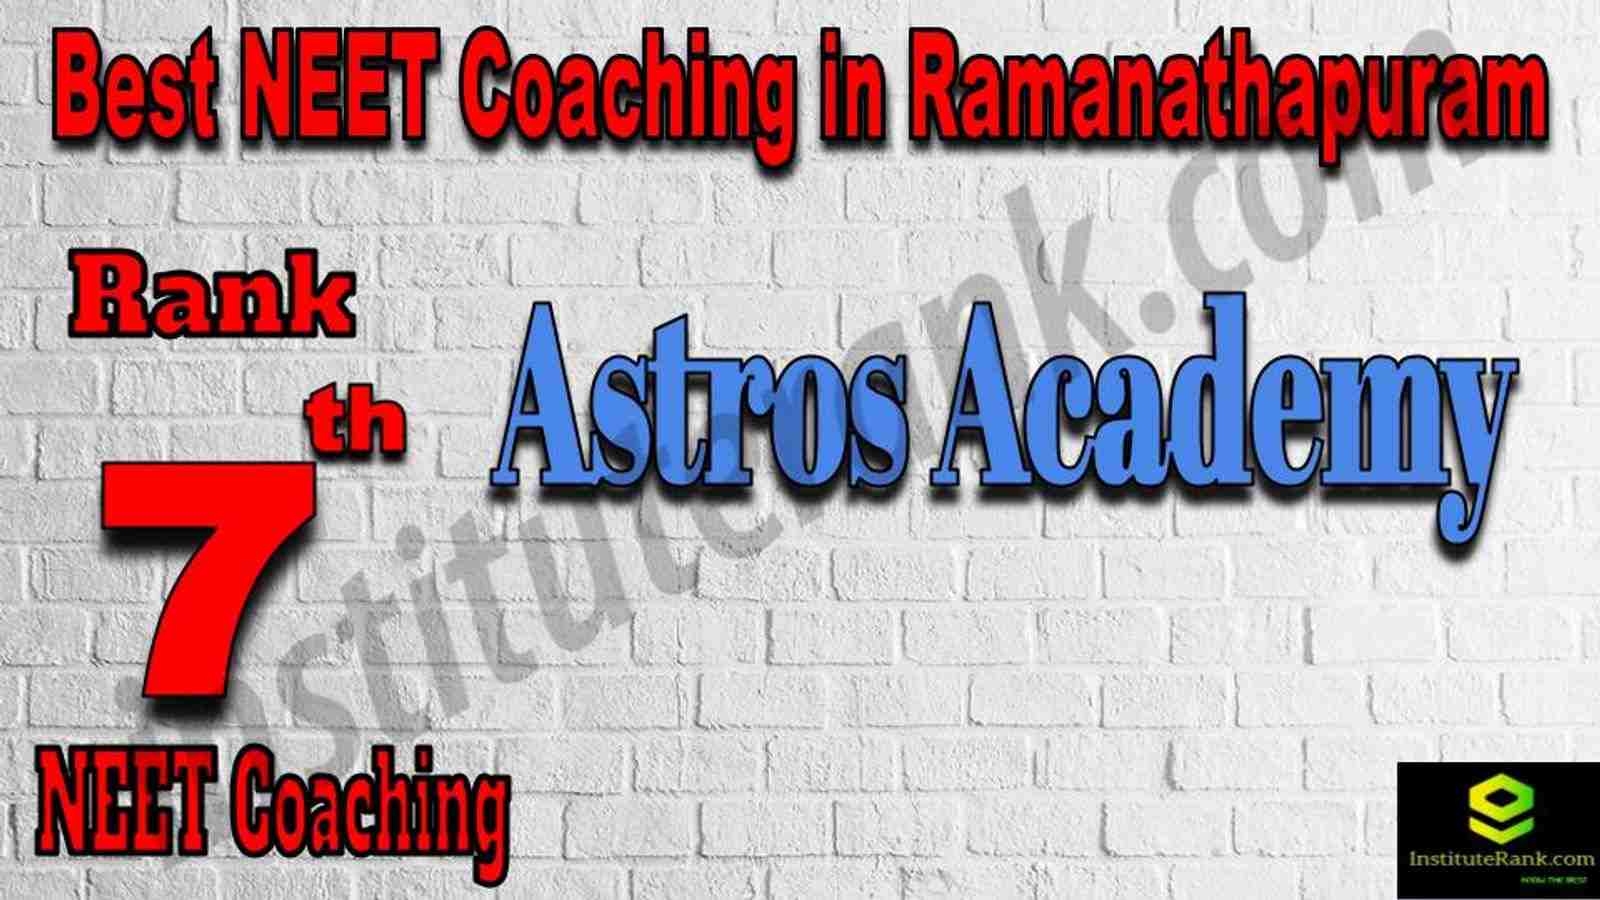 7th Best NEET Coaching in Ramanathapuram